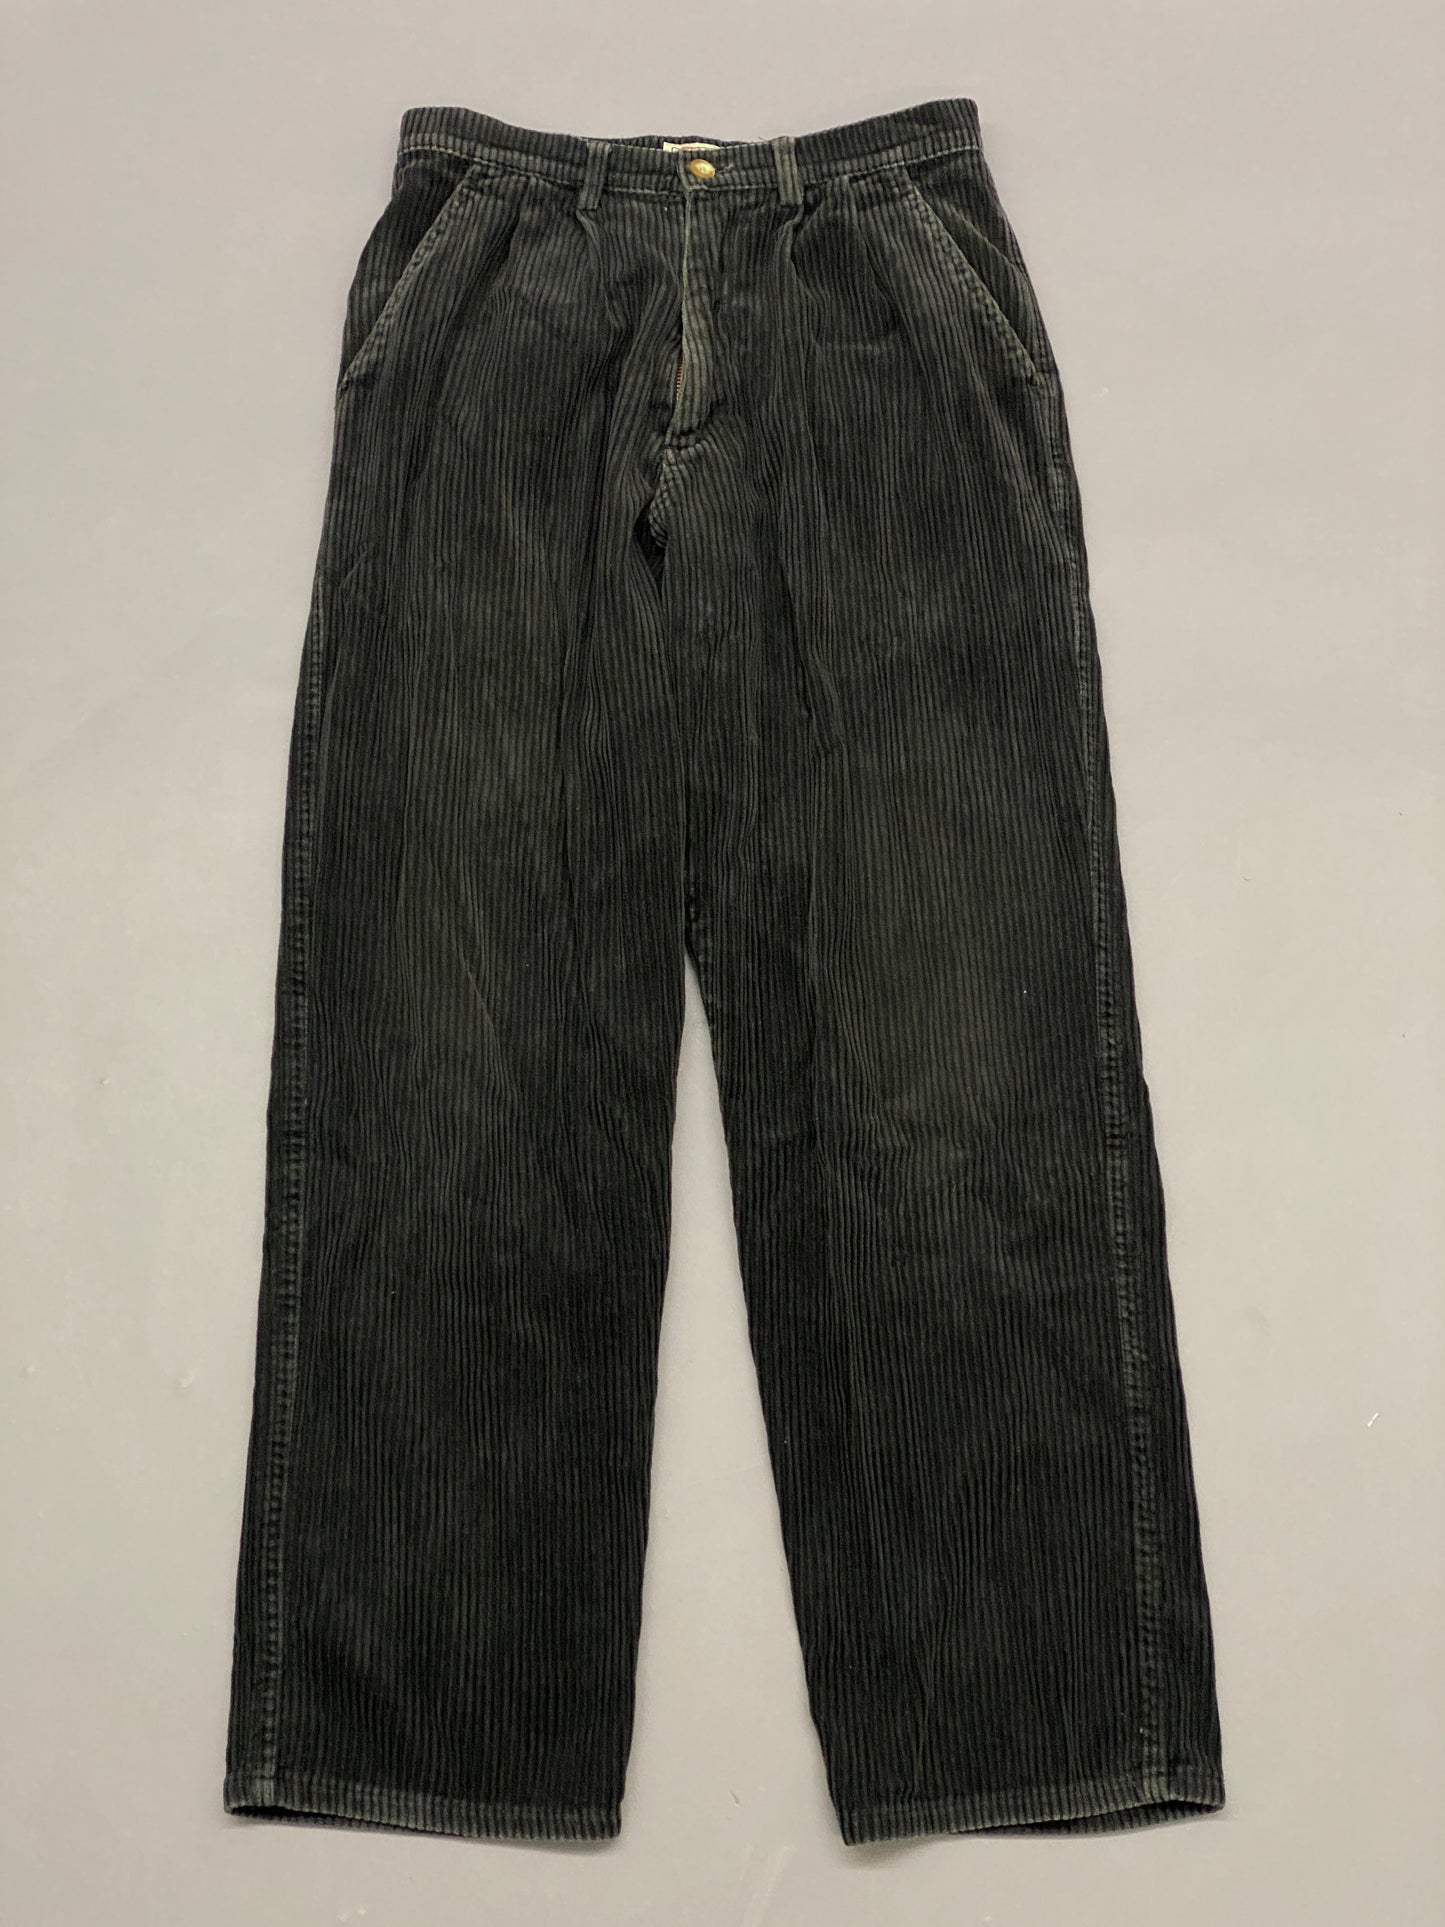 Pantalón Pana Negro Panino Vintage - 28